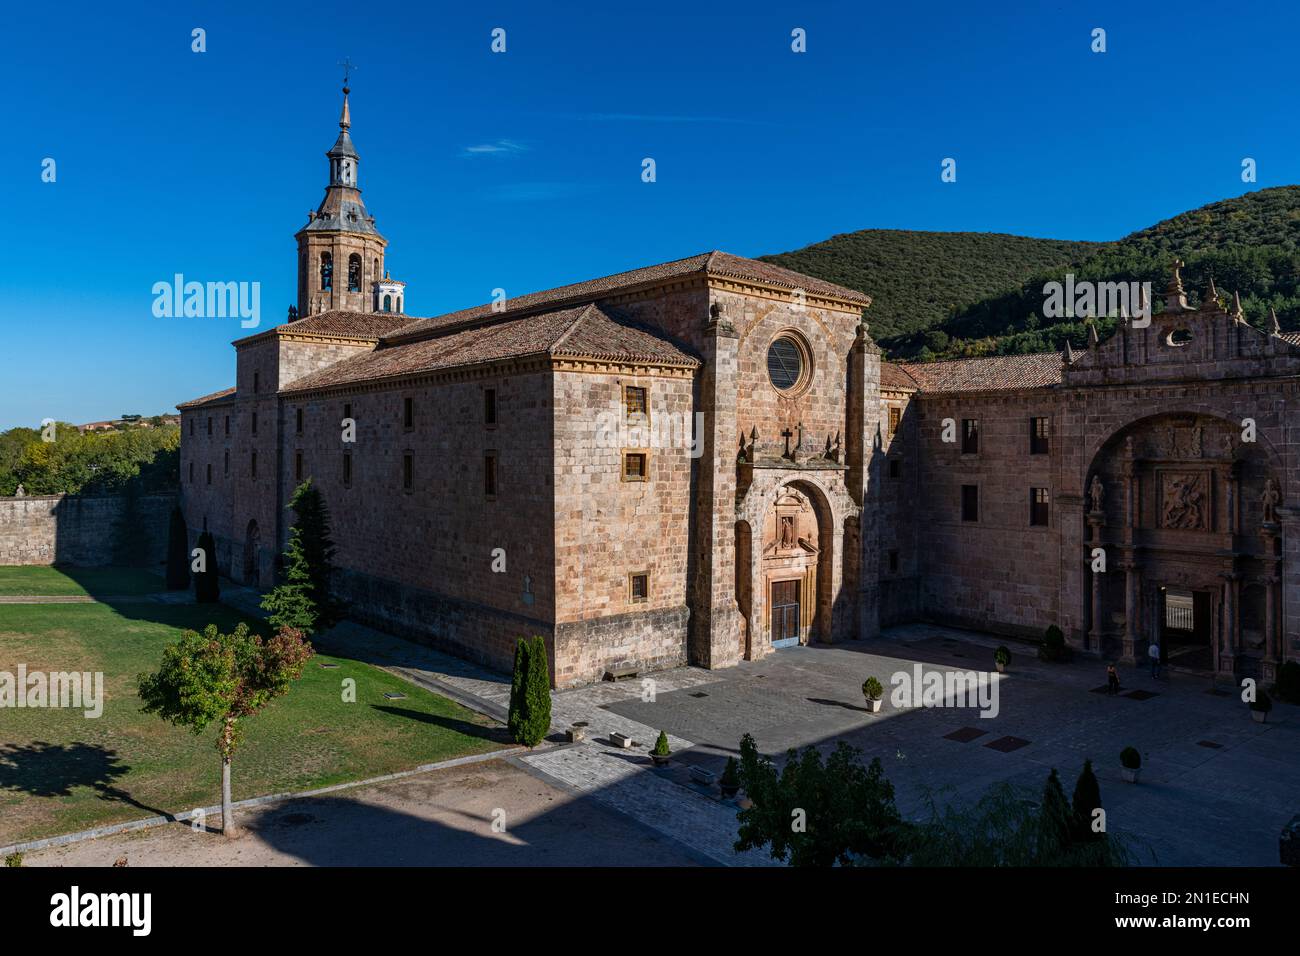 Monastère de Yuso, site classé au patrimoine mondial de l'UNESCO, monastères de San Millan de la Cogolla, la Rioja, Espagne, Europe Banque D'Images